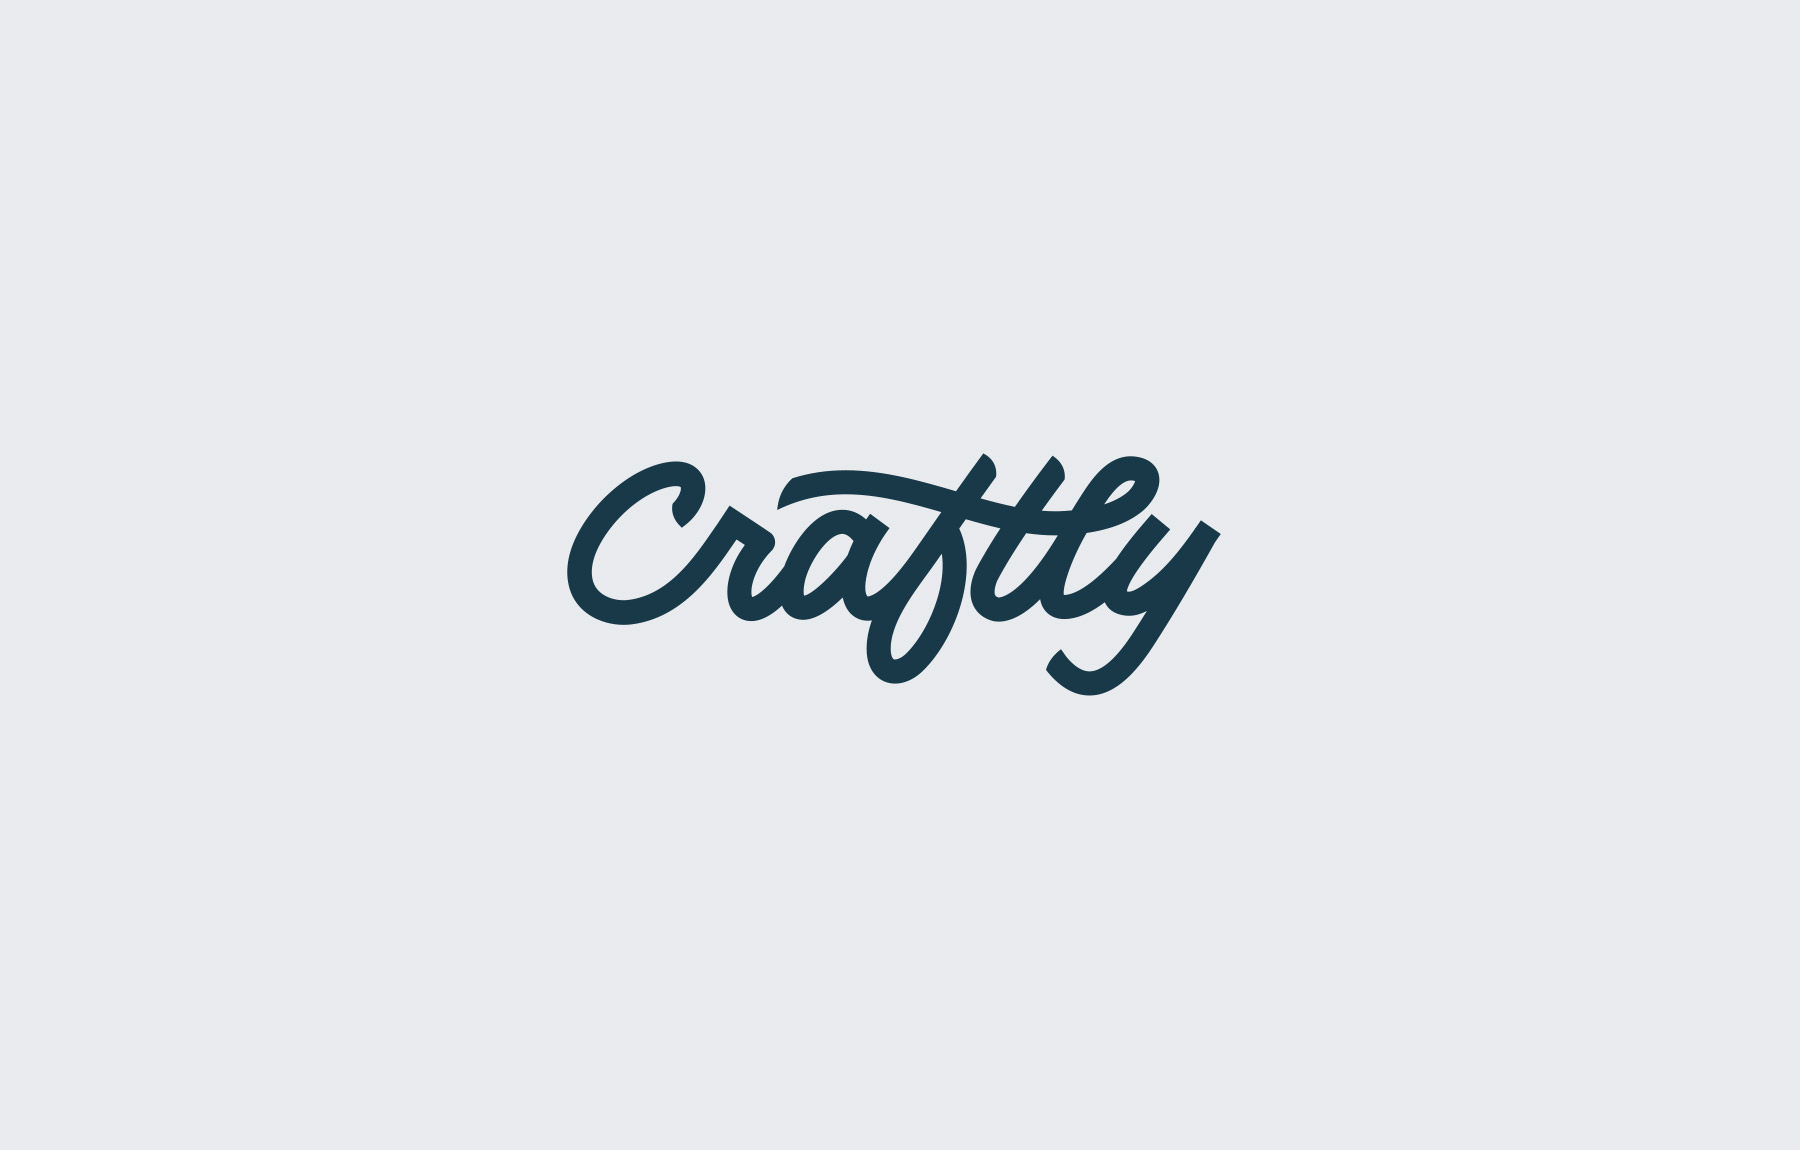 Craftly company logo